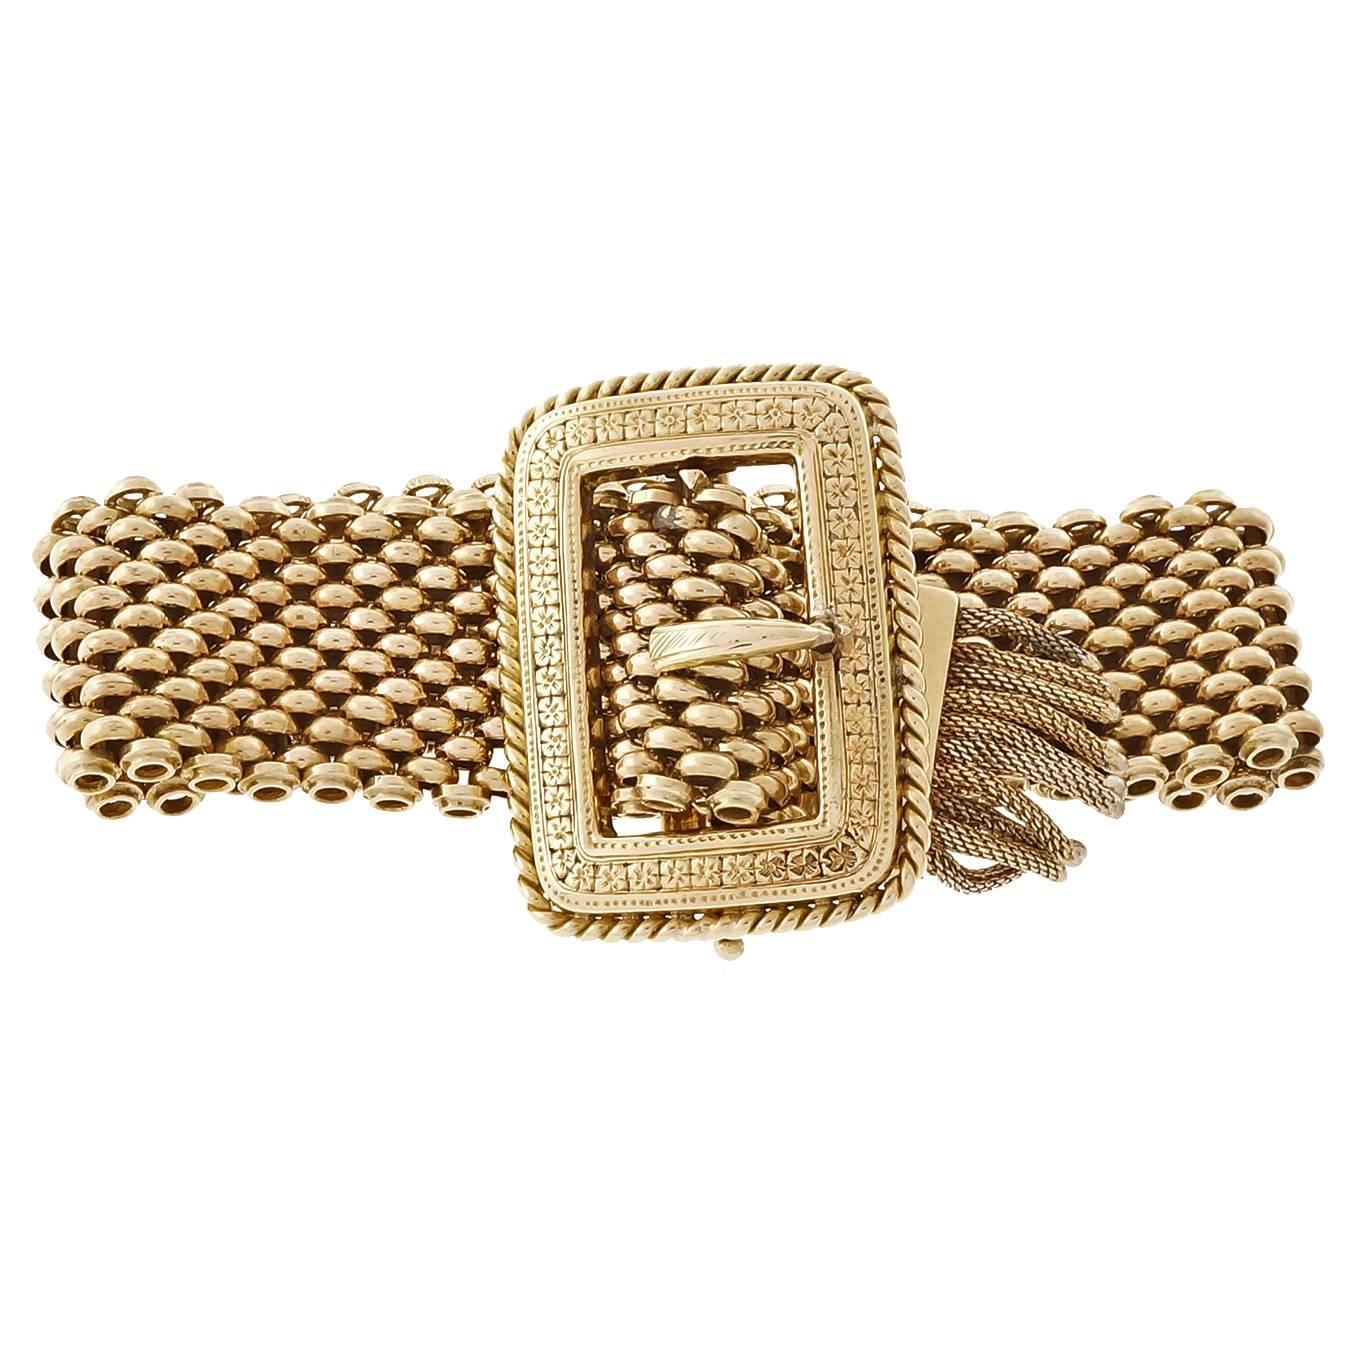 1900s Mesh Buckle Gold Bracelet For Sale at 1stdibs